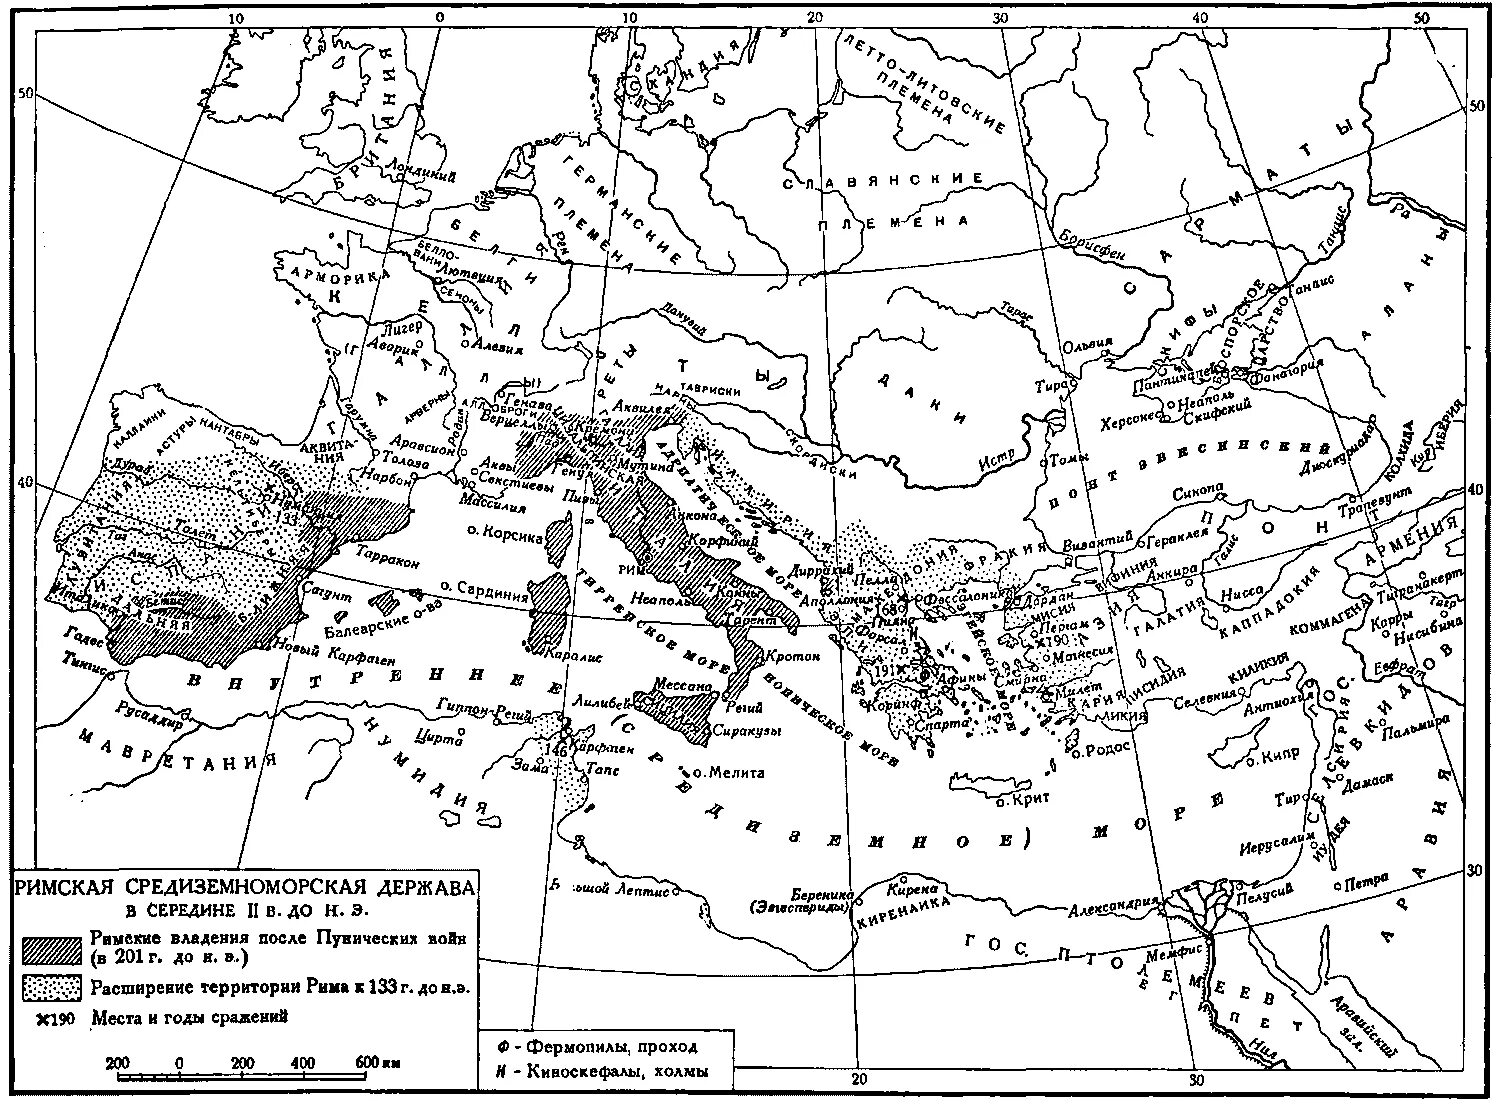 Римская Империя 2 век до н.э. Римская Империя 3 веке до нэ. Древний Рим 1 век н.э. Завоевание восточного средиземноморья